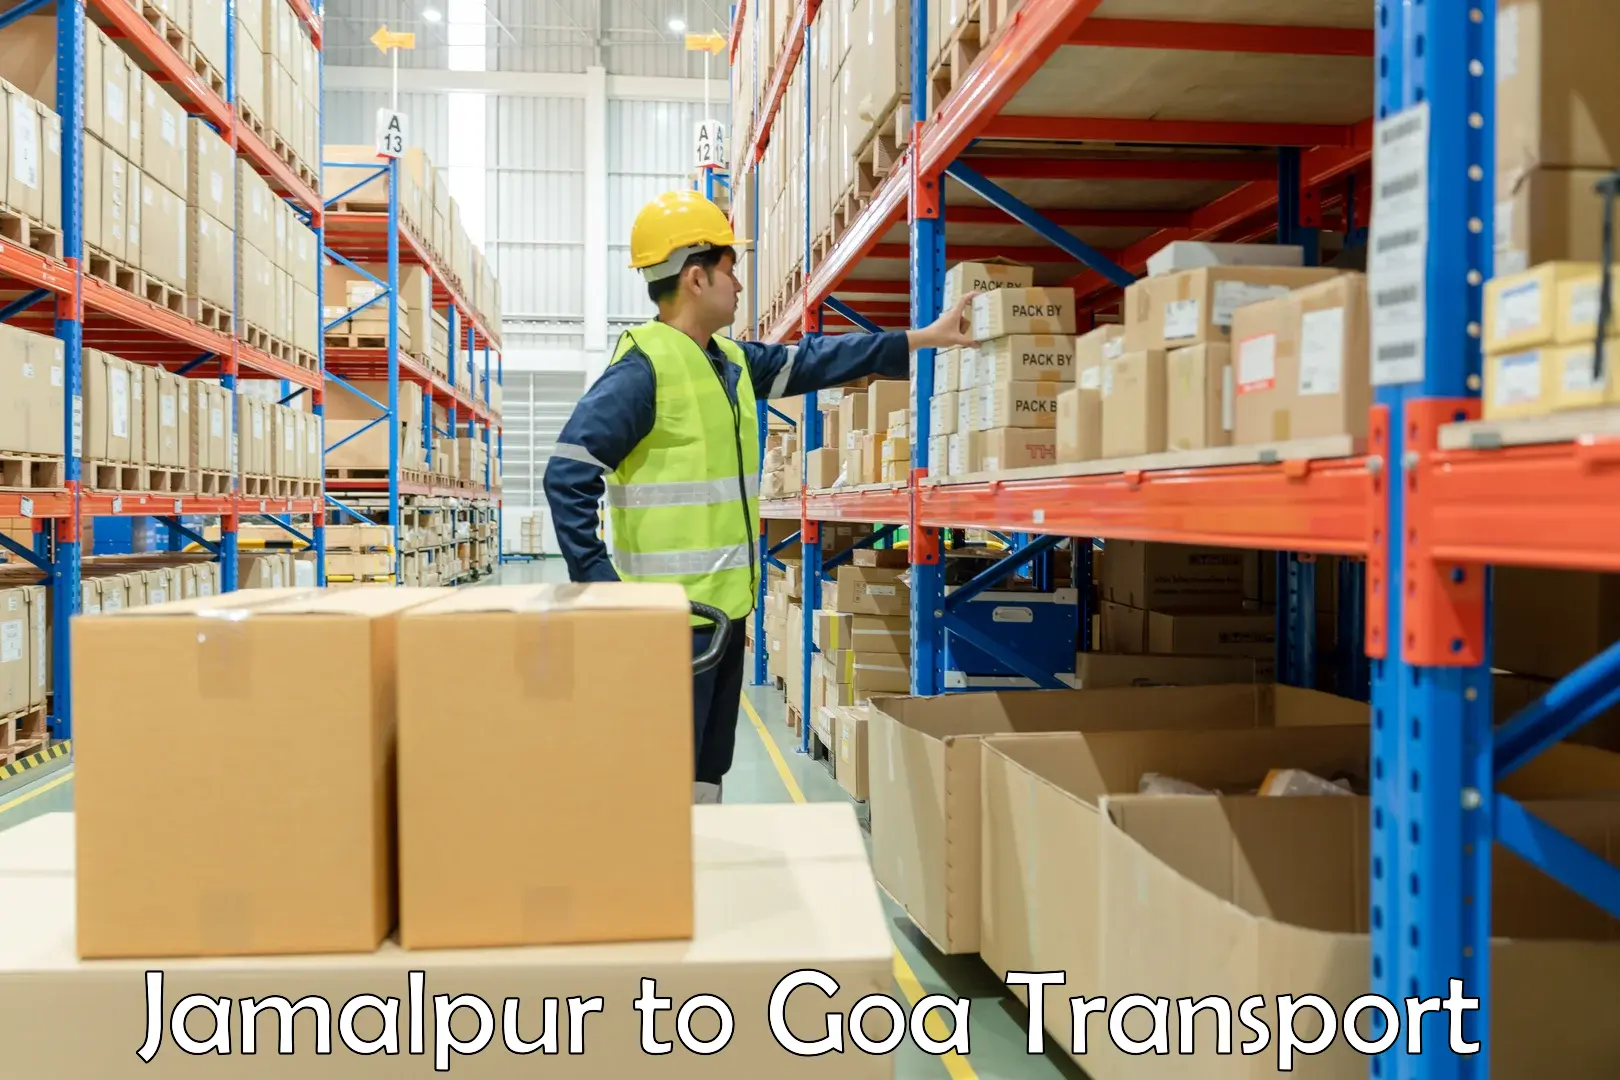 Container transport service Jamalpur to IIT Goa